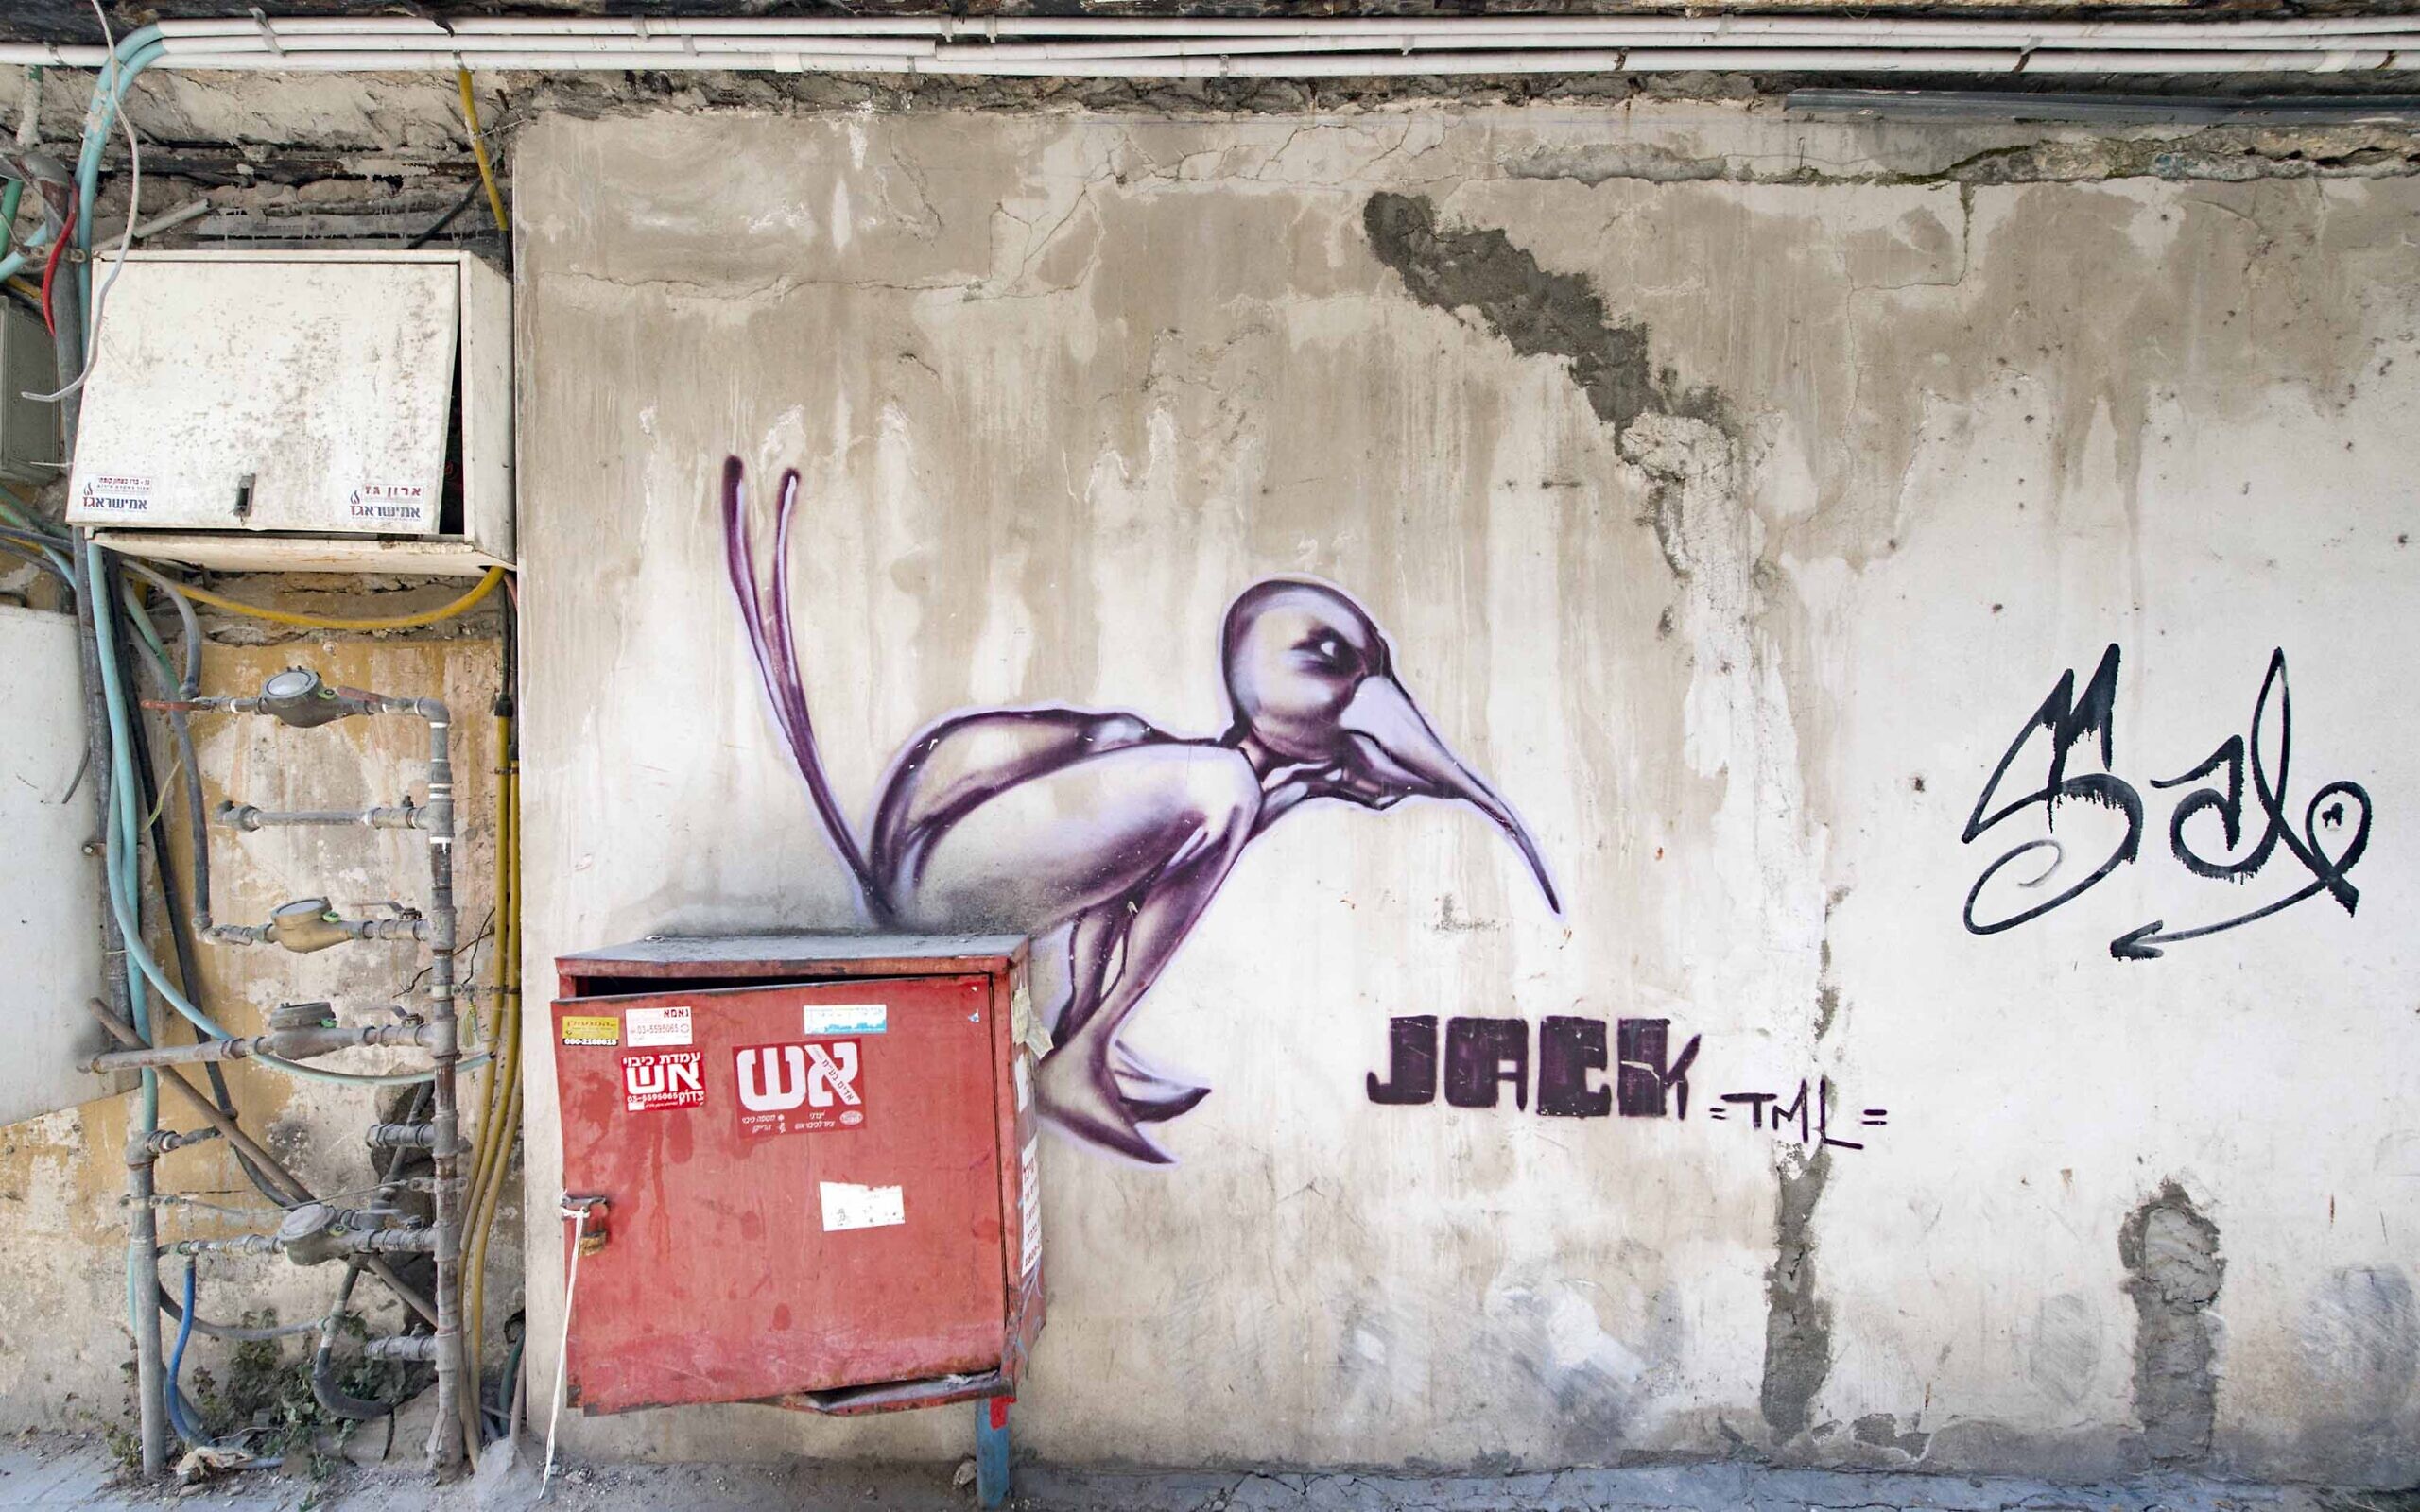 Street art in Tel Aviv by Jack TML. (Lord K2)